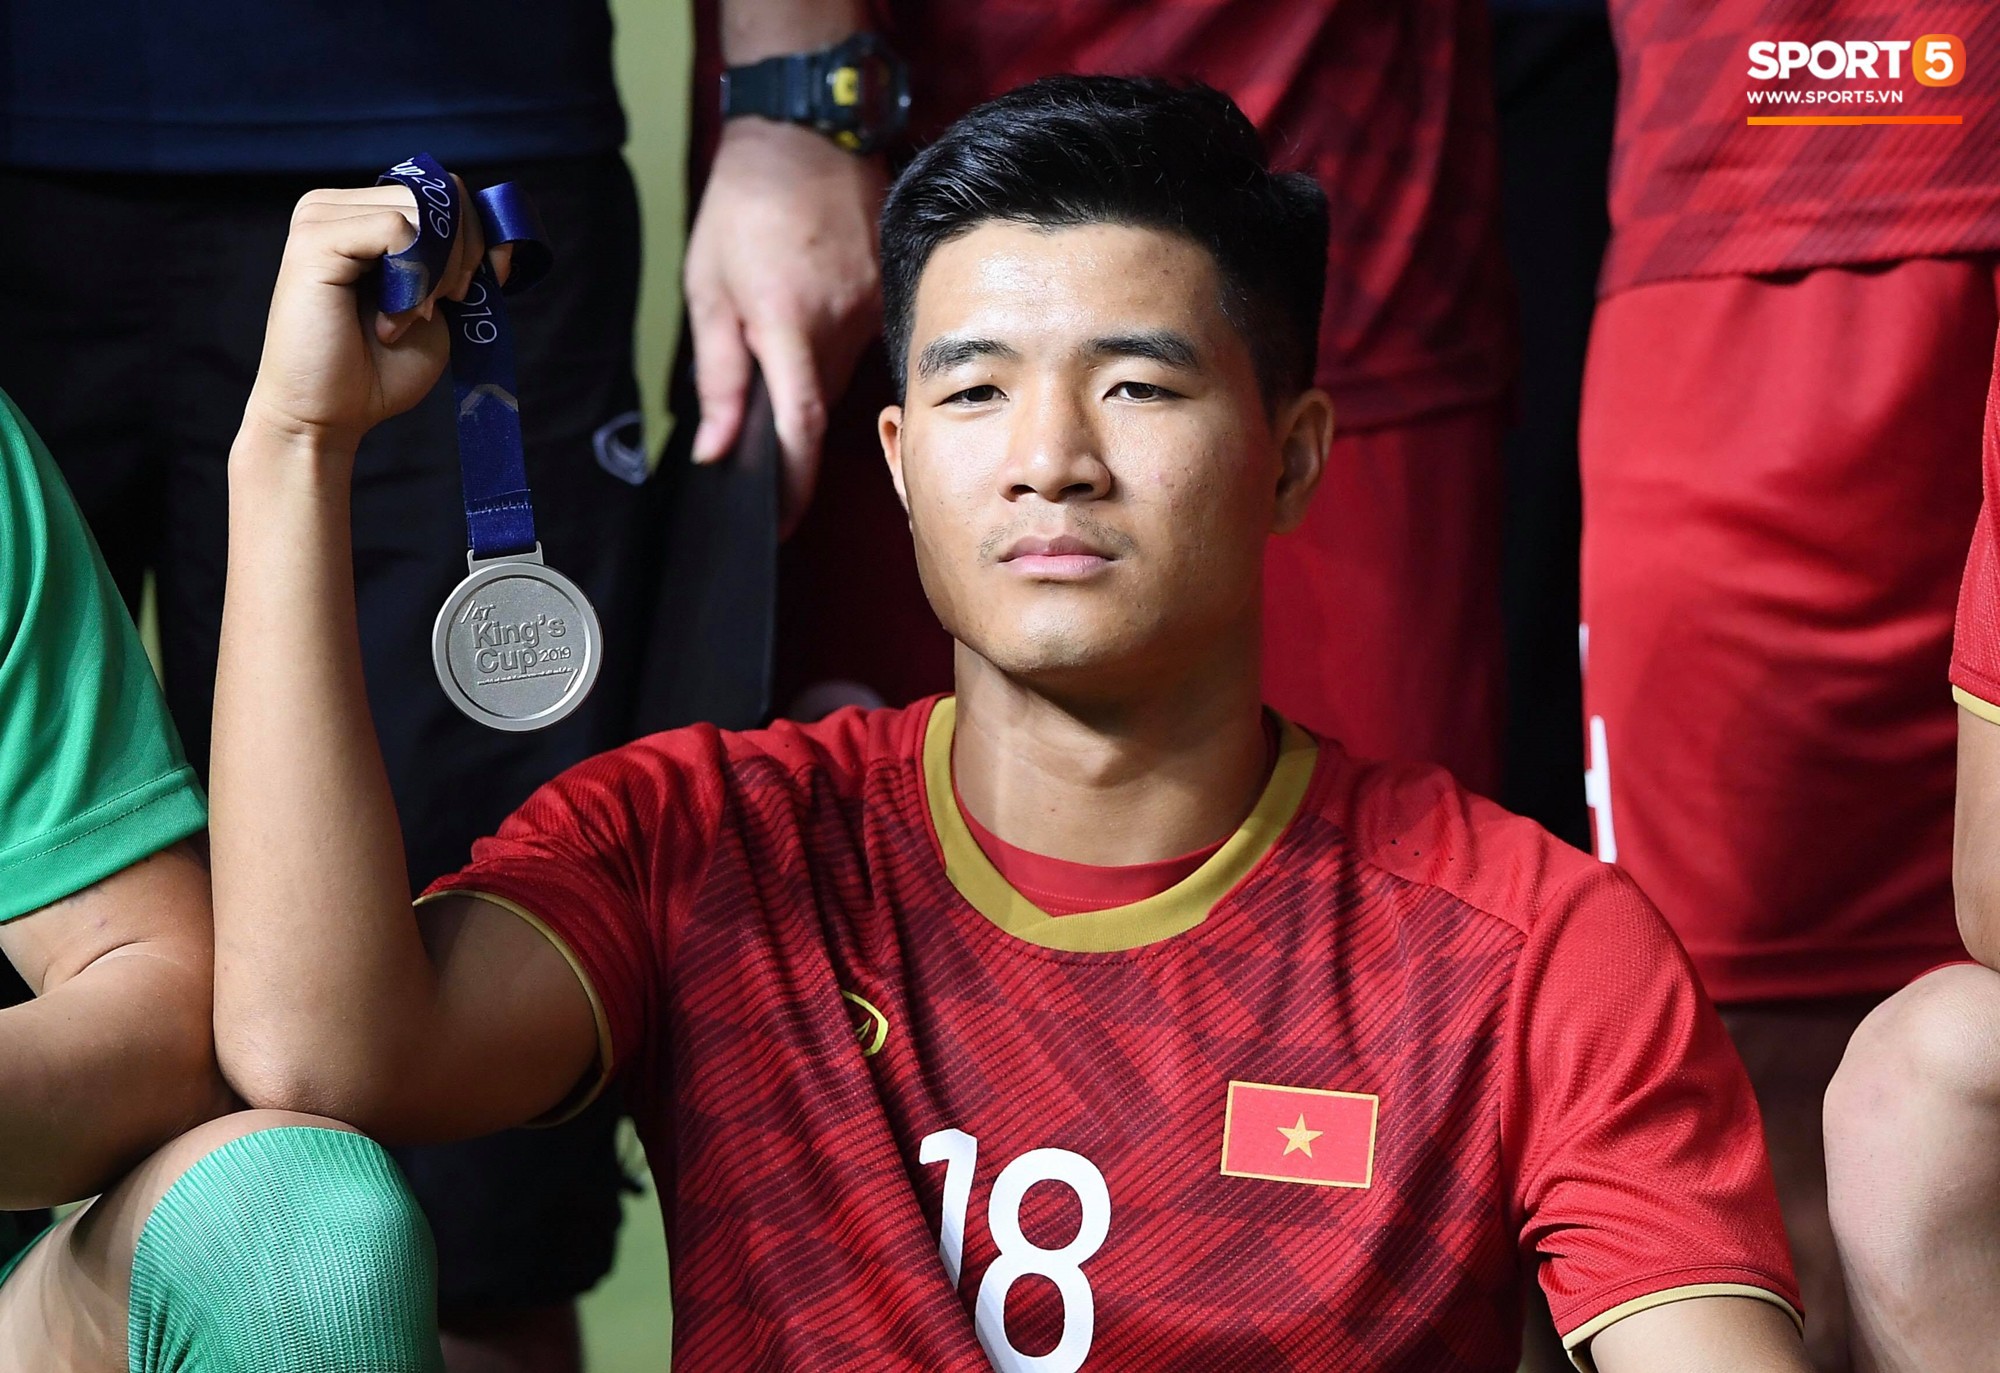 Văn Toàn đấm yêu Xuân Trường và loạt biểu cảm khó đỡ của tuyển Việt Nam trên bục nhận huy chương - Ảnh 12.